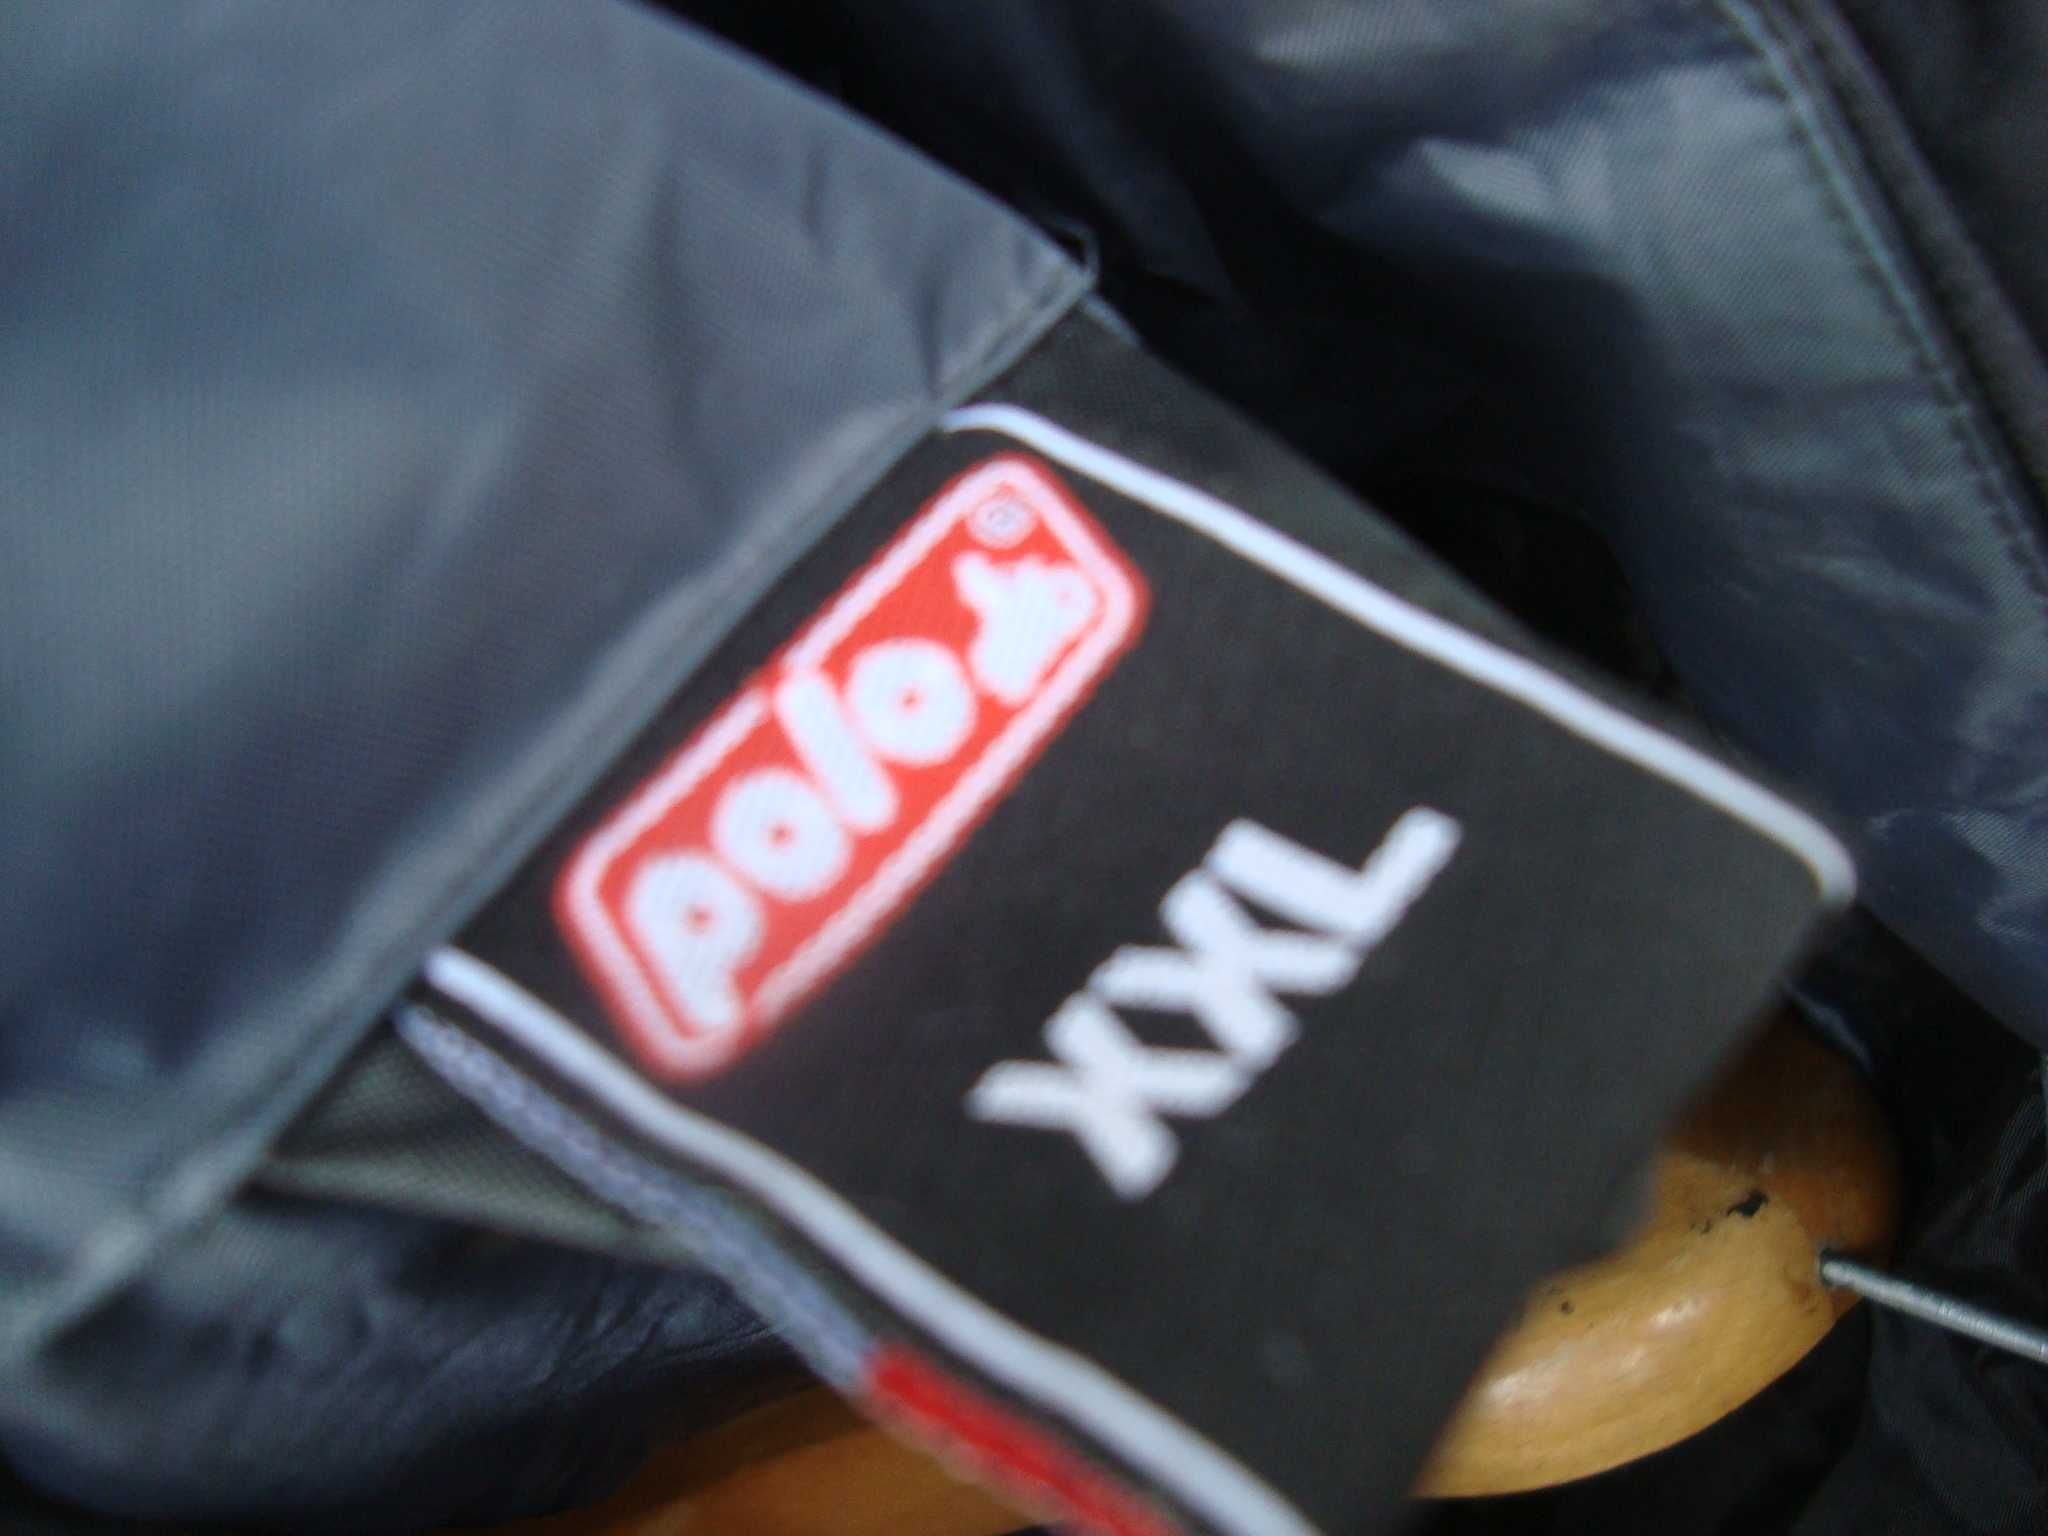 kurtka przeciw deszczowa Polo roz XXL-weaterproof Super-kaptur